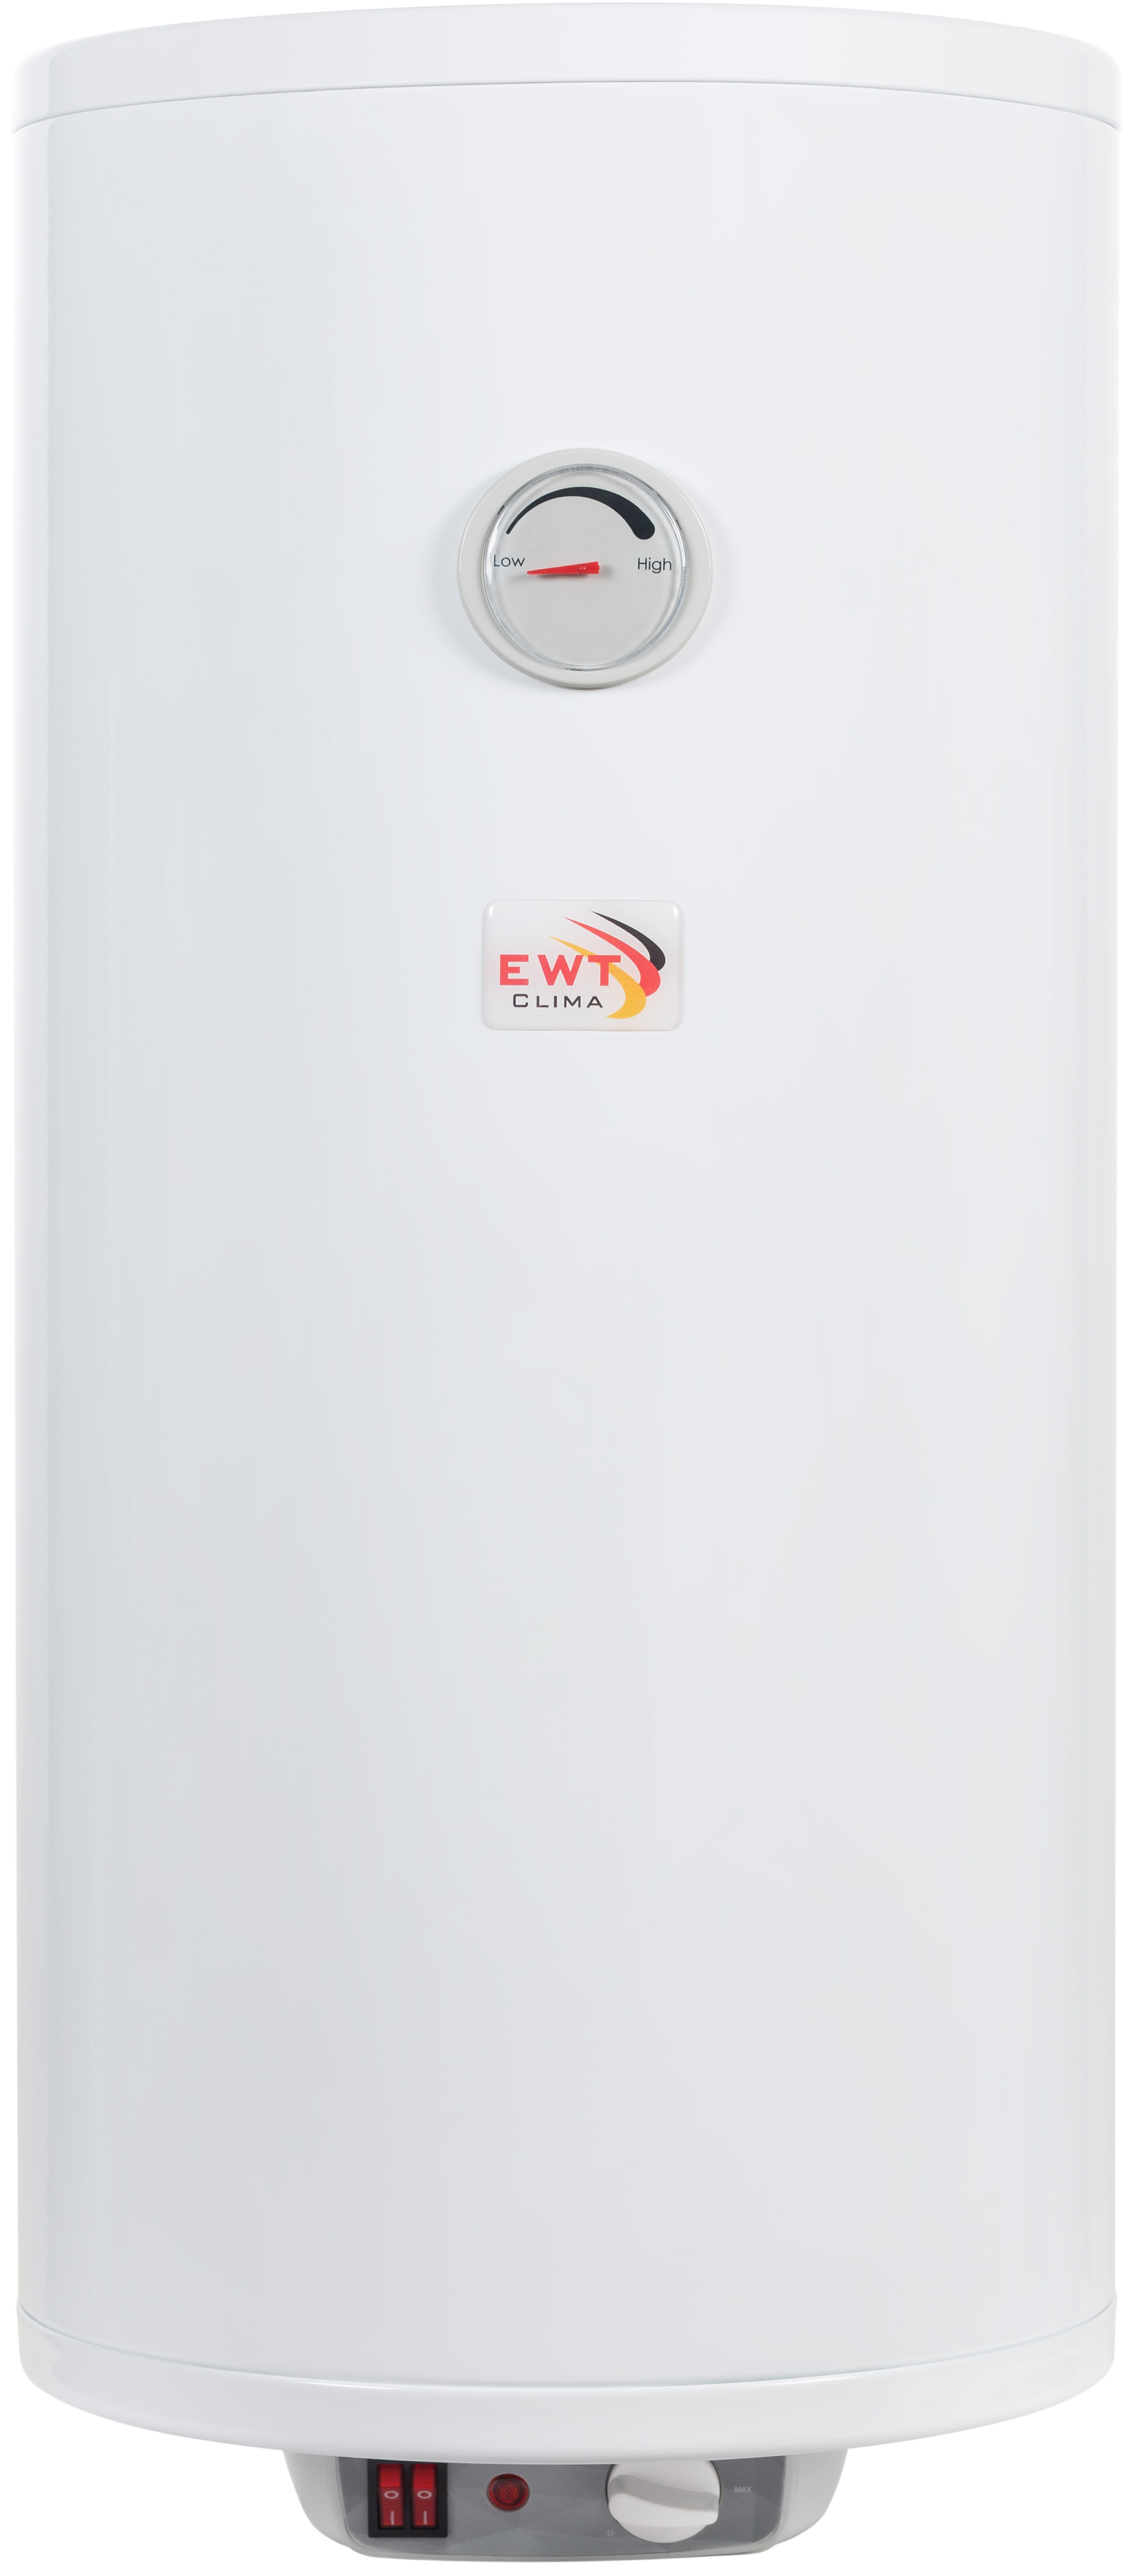 Бойлер EWT Clima Runde Dry Slim AWH/M 50 V